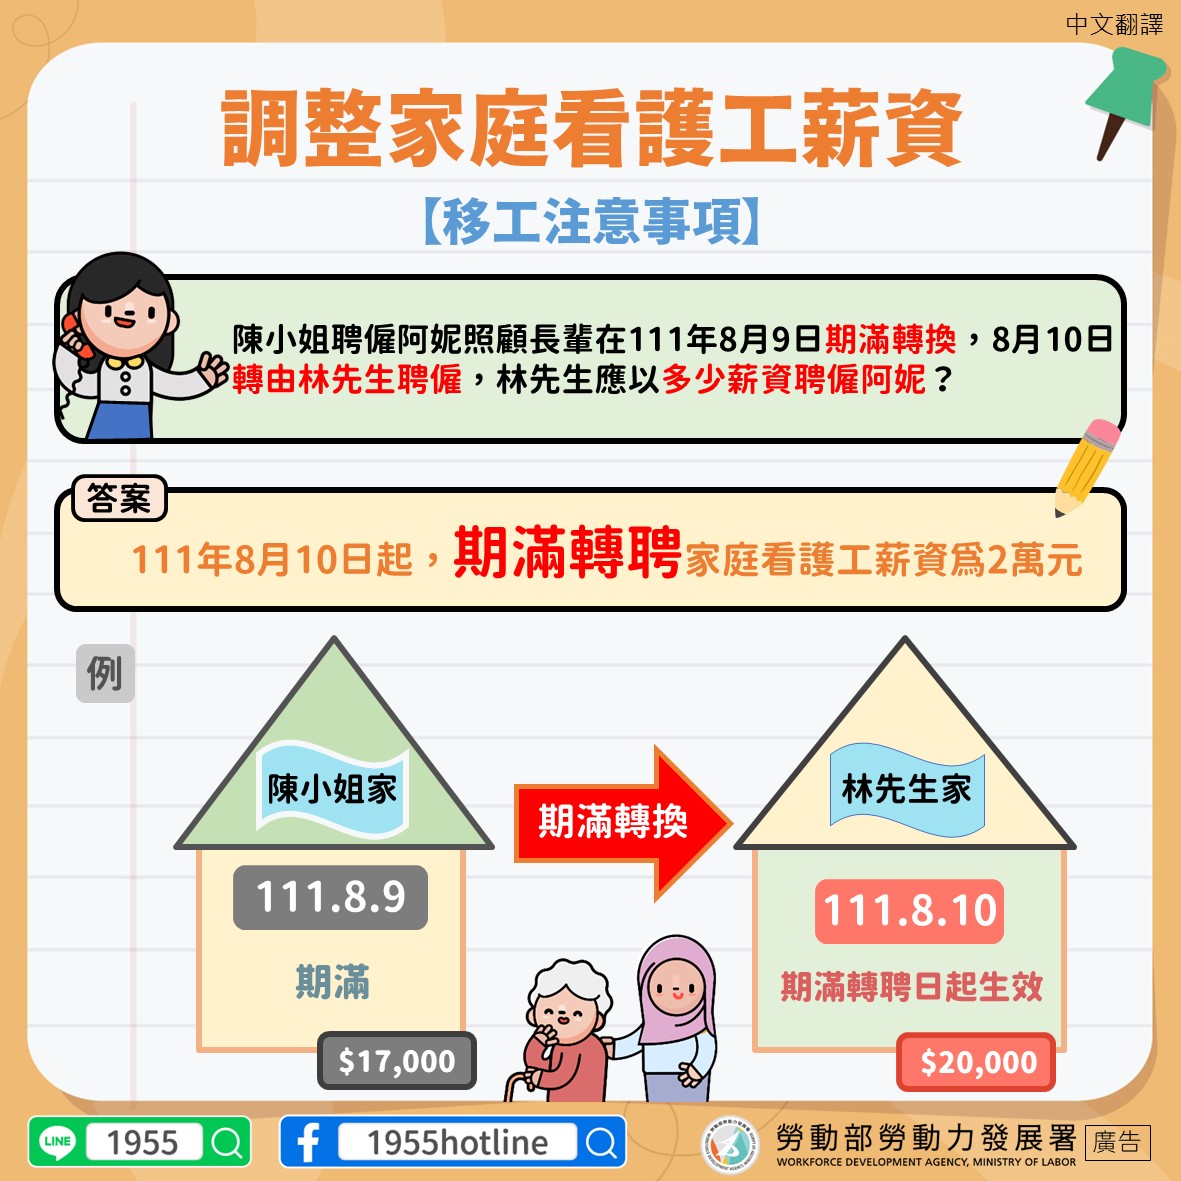 1110825家事移工轉換雇主是否可以加薪-移工注意事項-中文翻譯.JPG